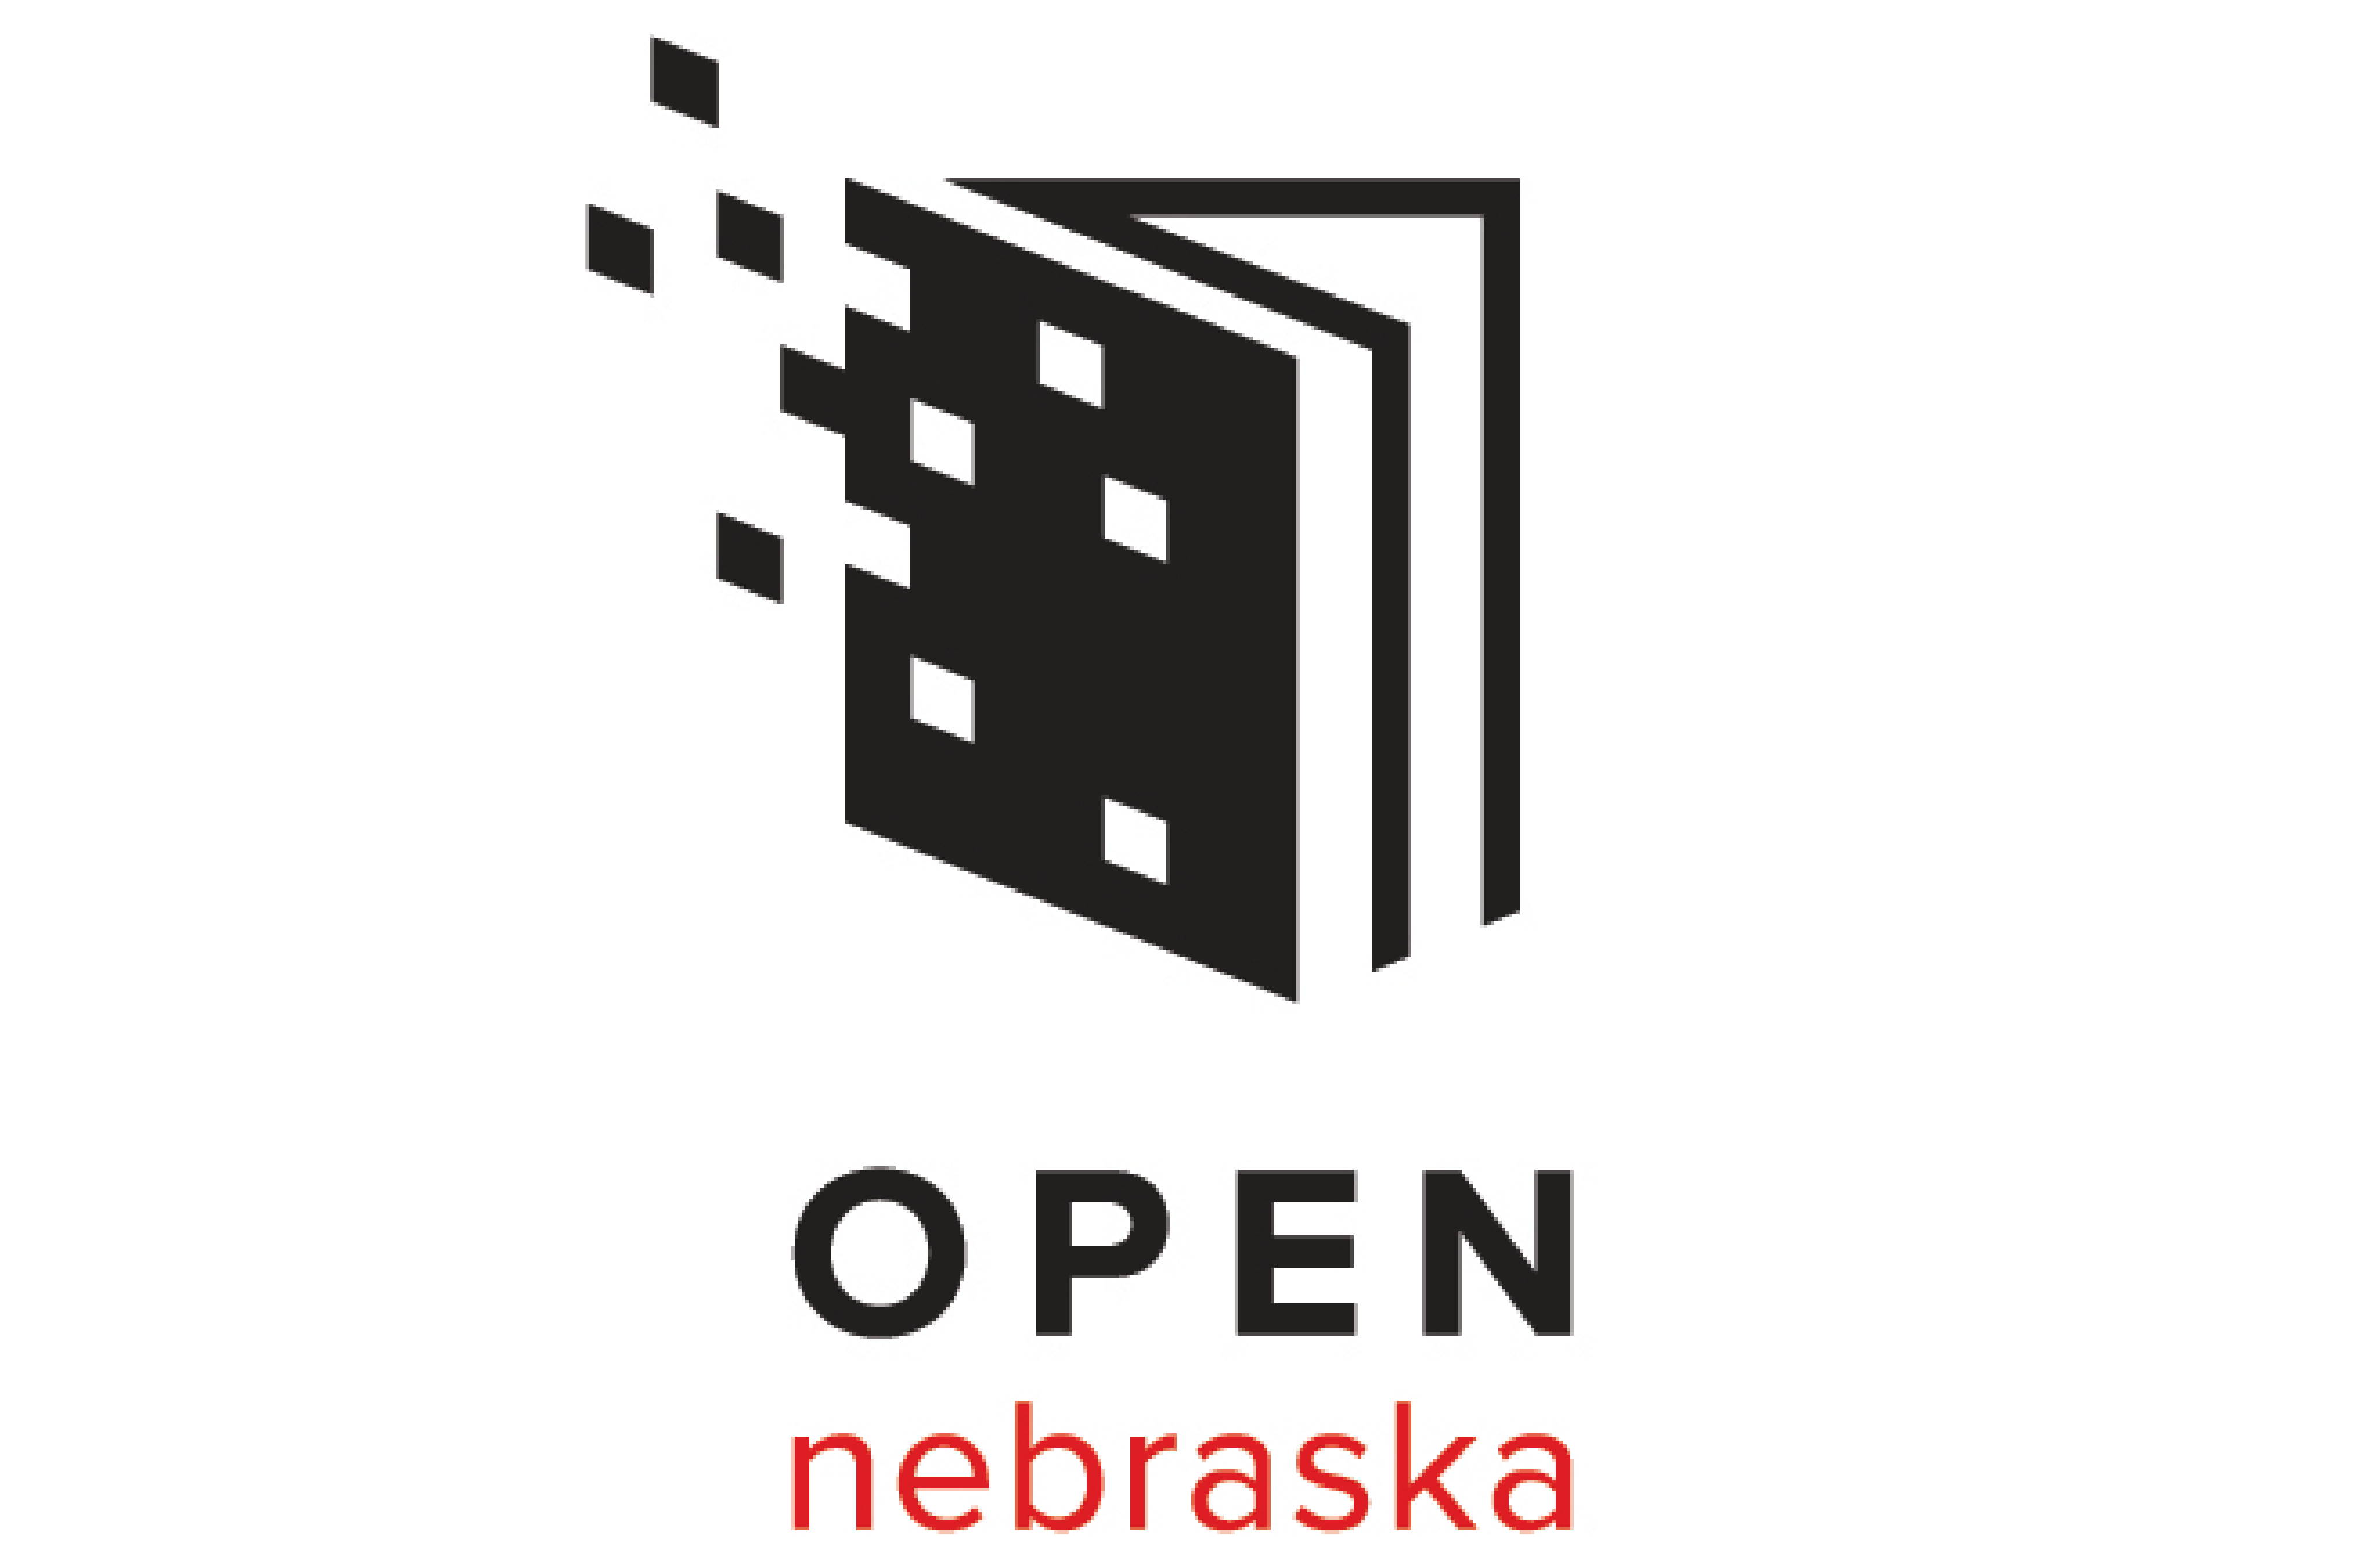 Open Nebraska logo for the University of Nebraska at Omaha.